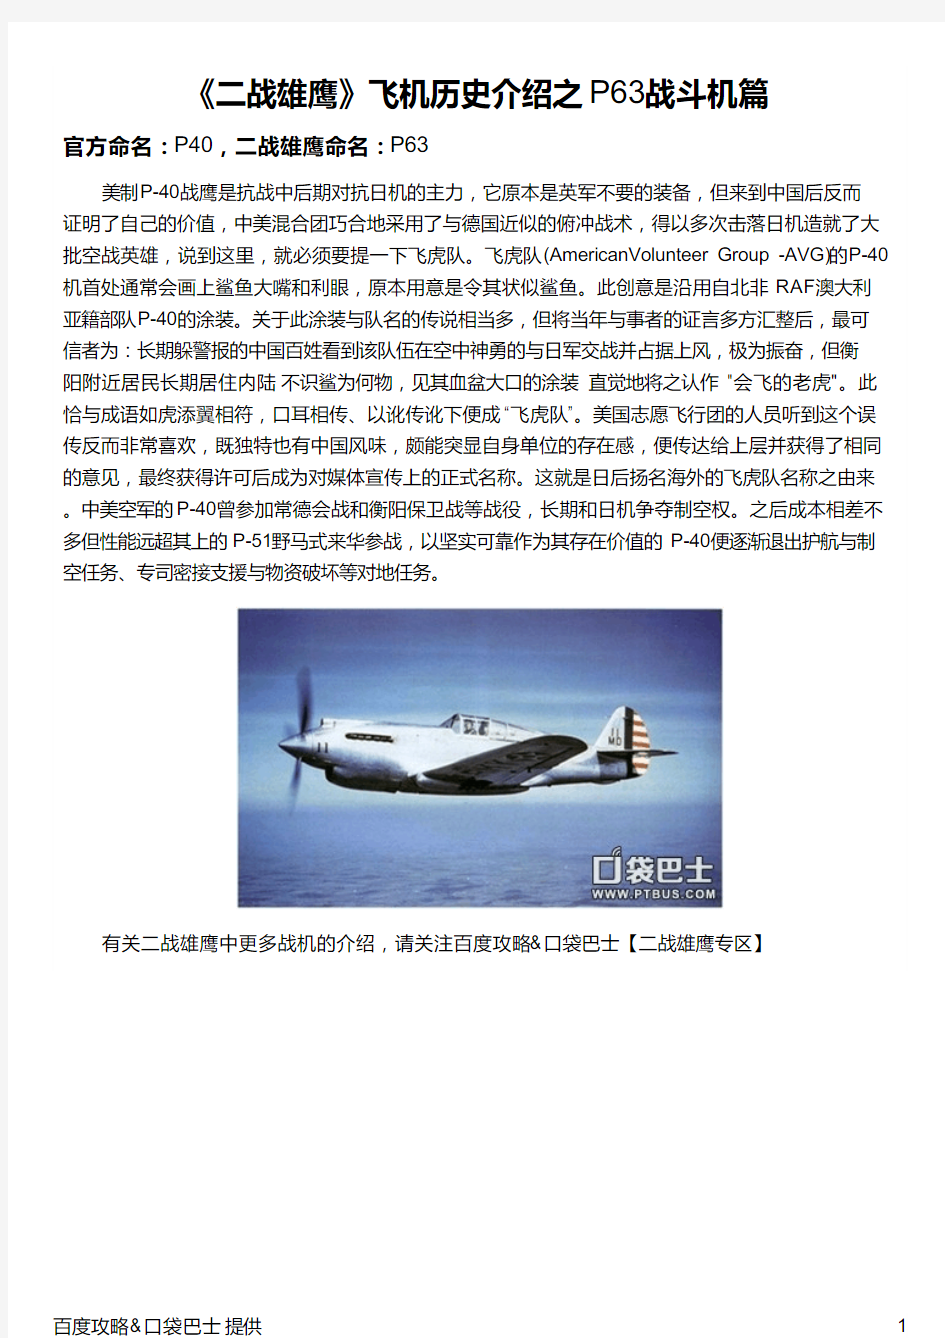 《二战雄鹰》飞机历史介绍之P63战斗机篇